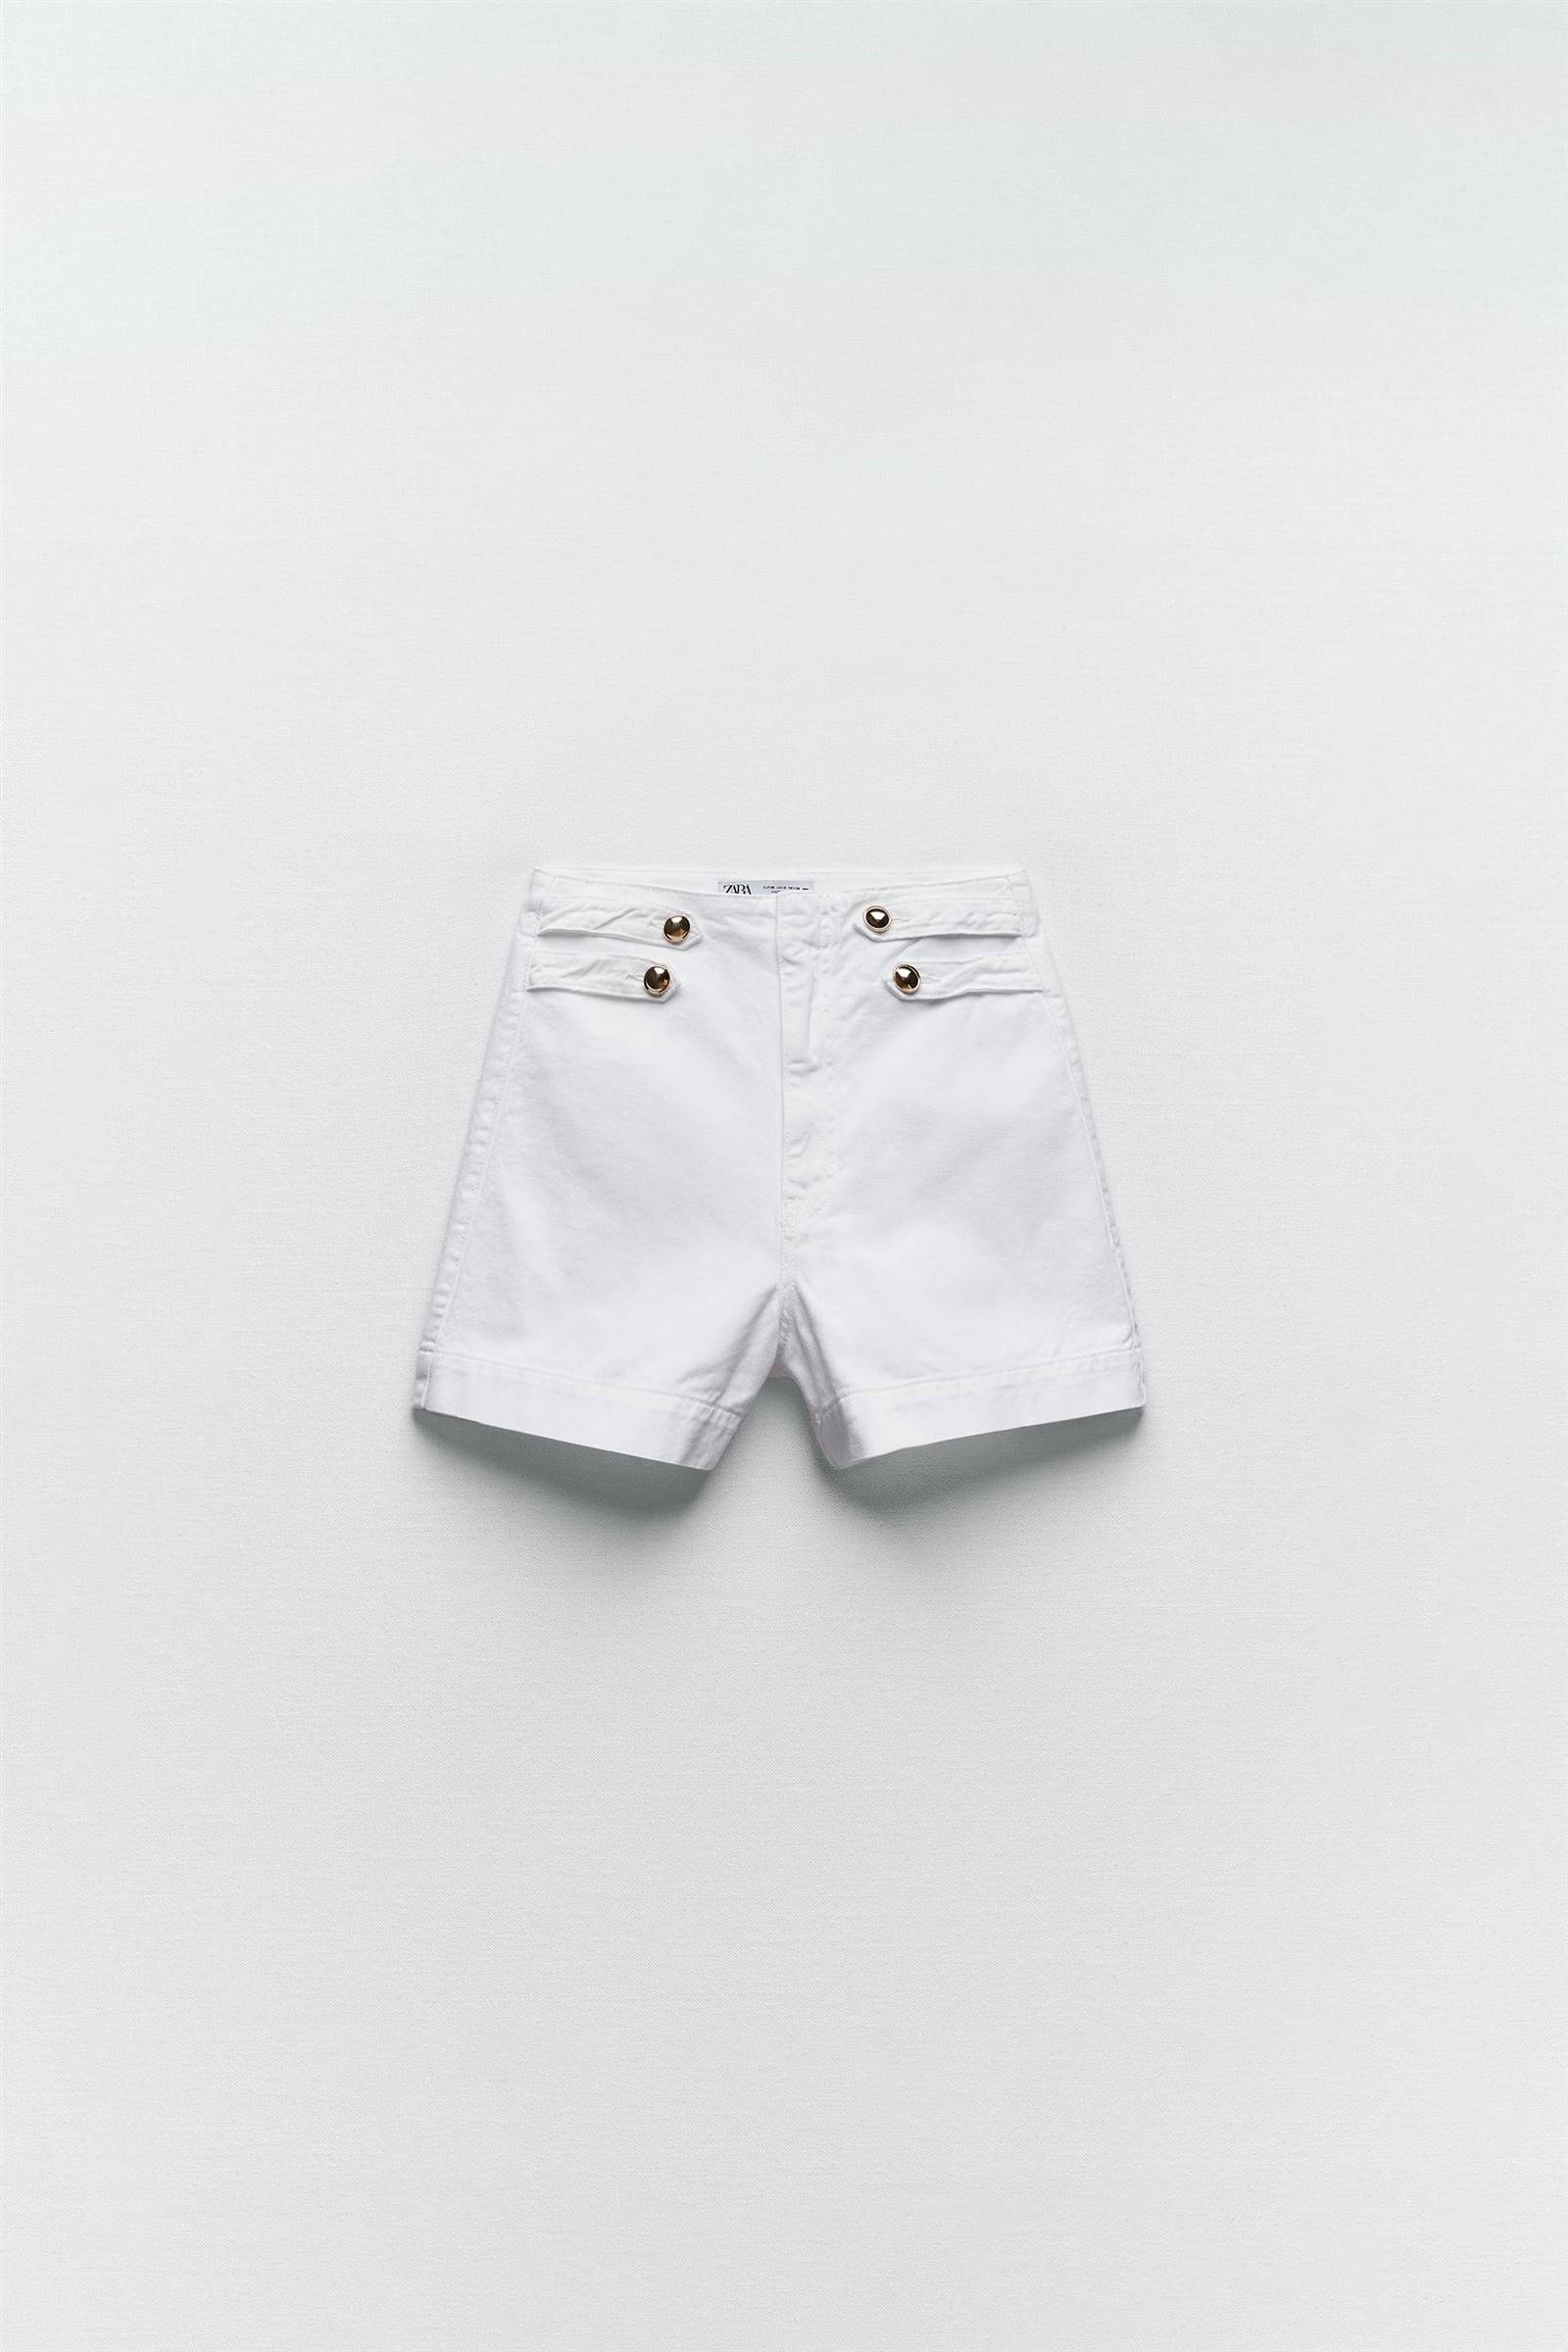 Pantalones cortos blancos con botones de Zara